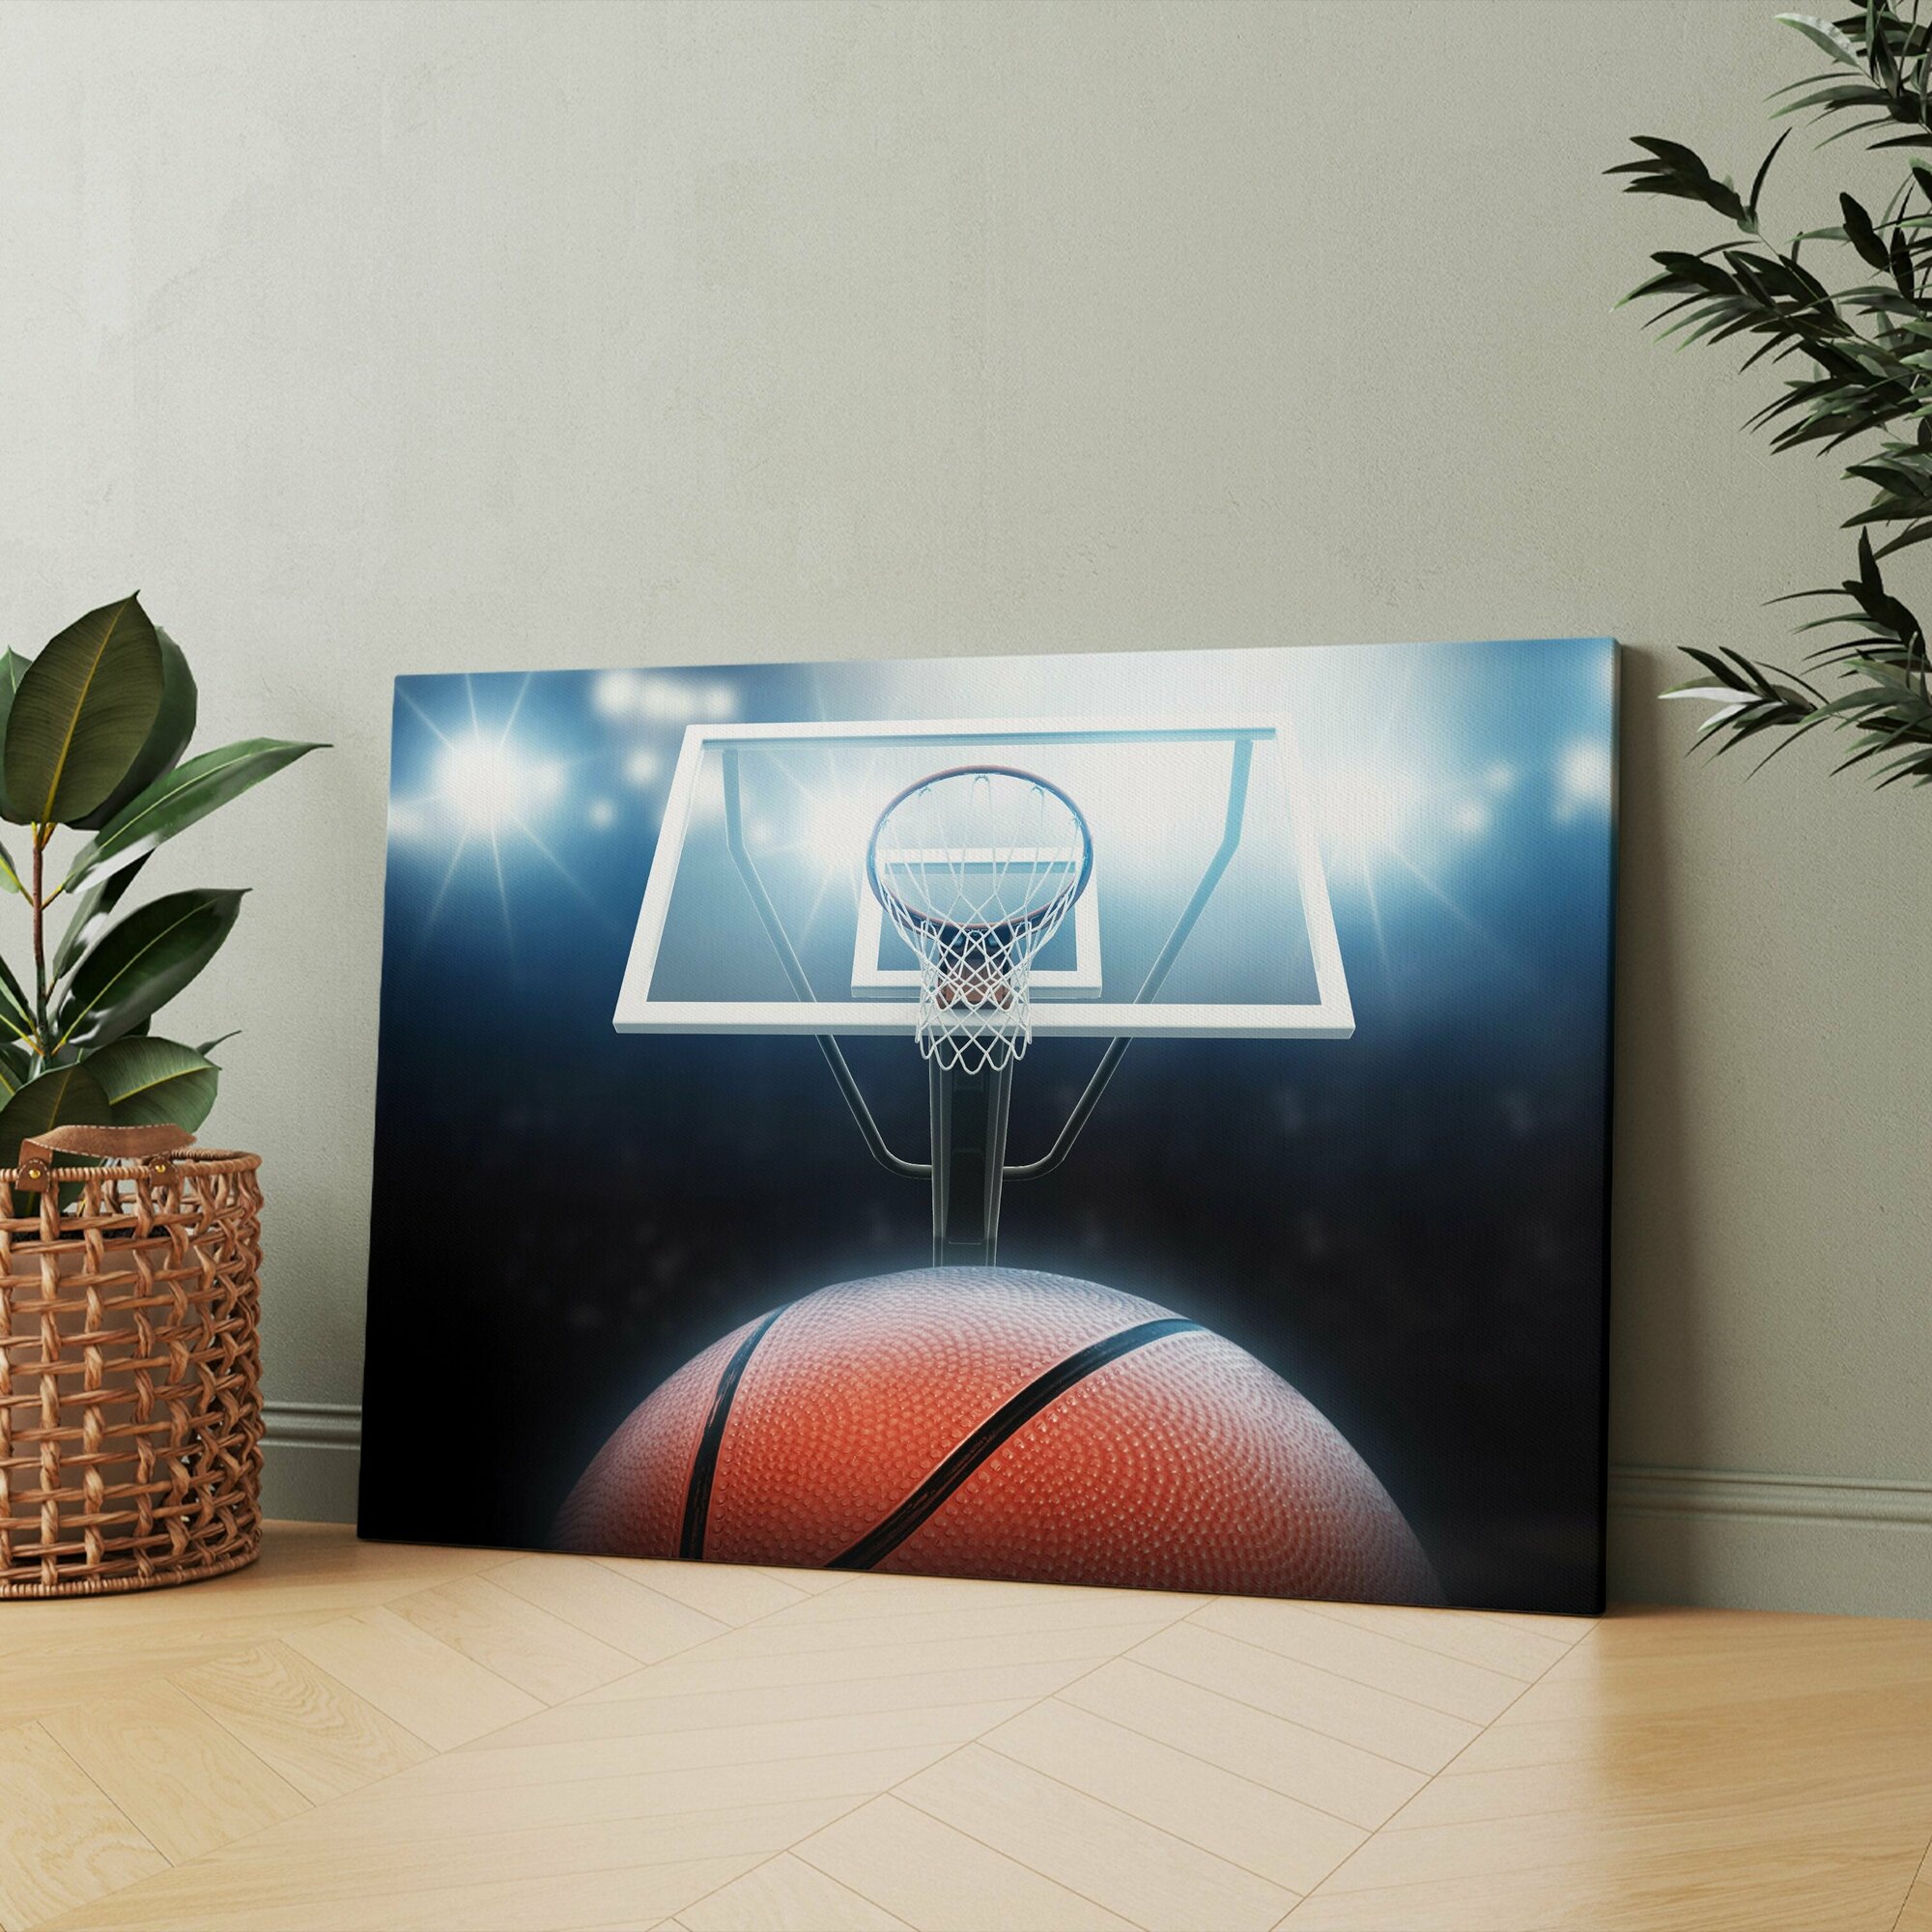 Картина на холсте "Баскетбольный мяч проходит через кольцо на баскетбольной площадке" 50x70 см. Интерьерная, на стену.